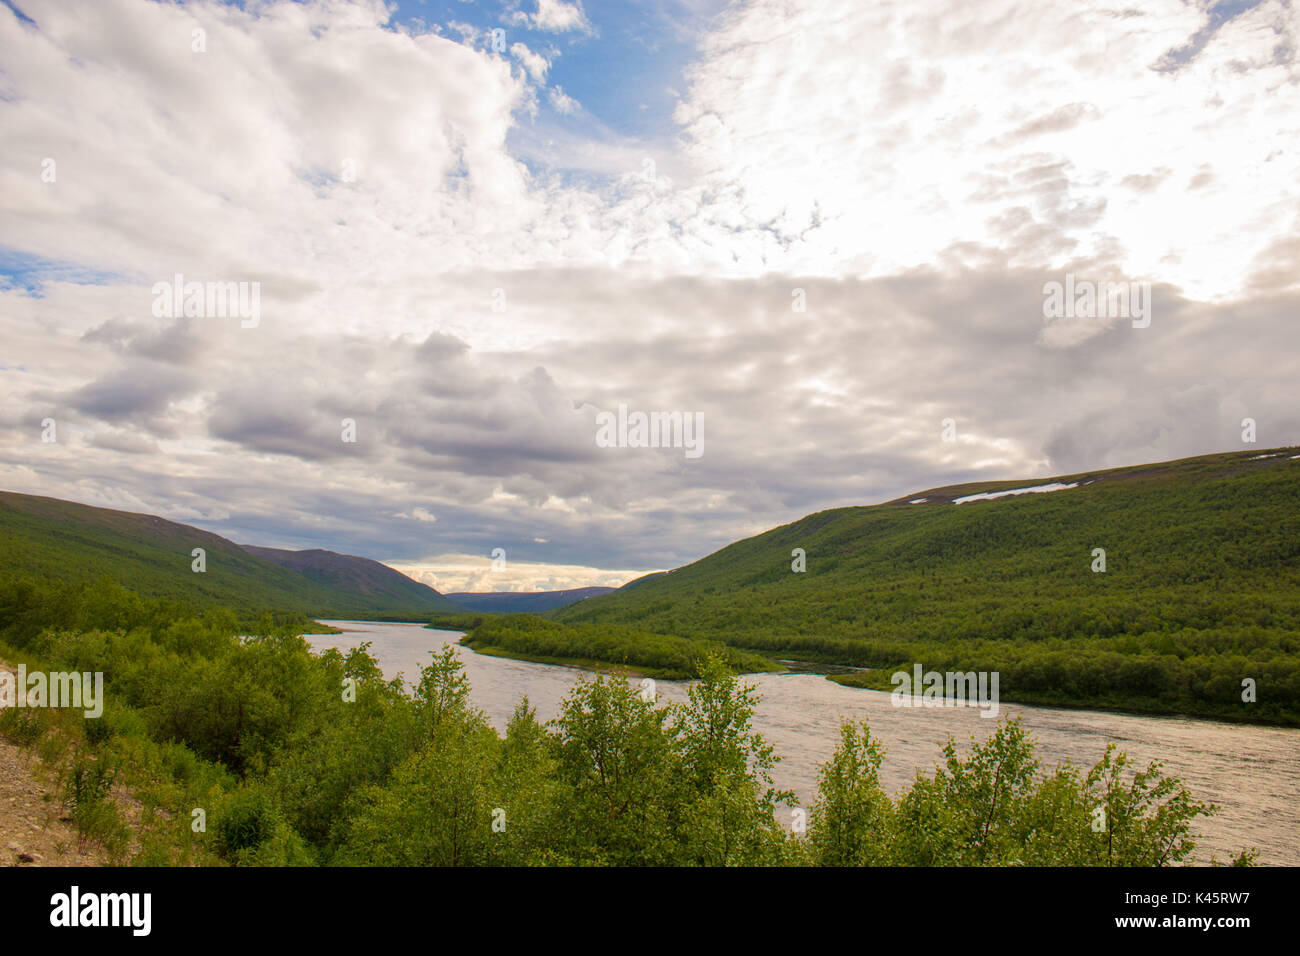 Fiume Tana, confine naturale tra la Finlandia e la Norvegia, Utsjoki, Lapponia settentrionale Foto Stock